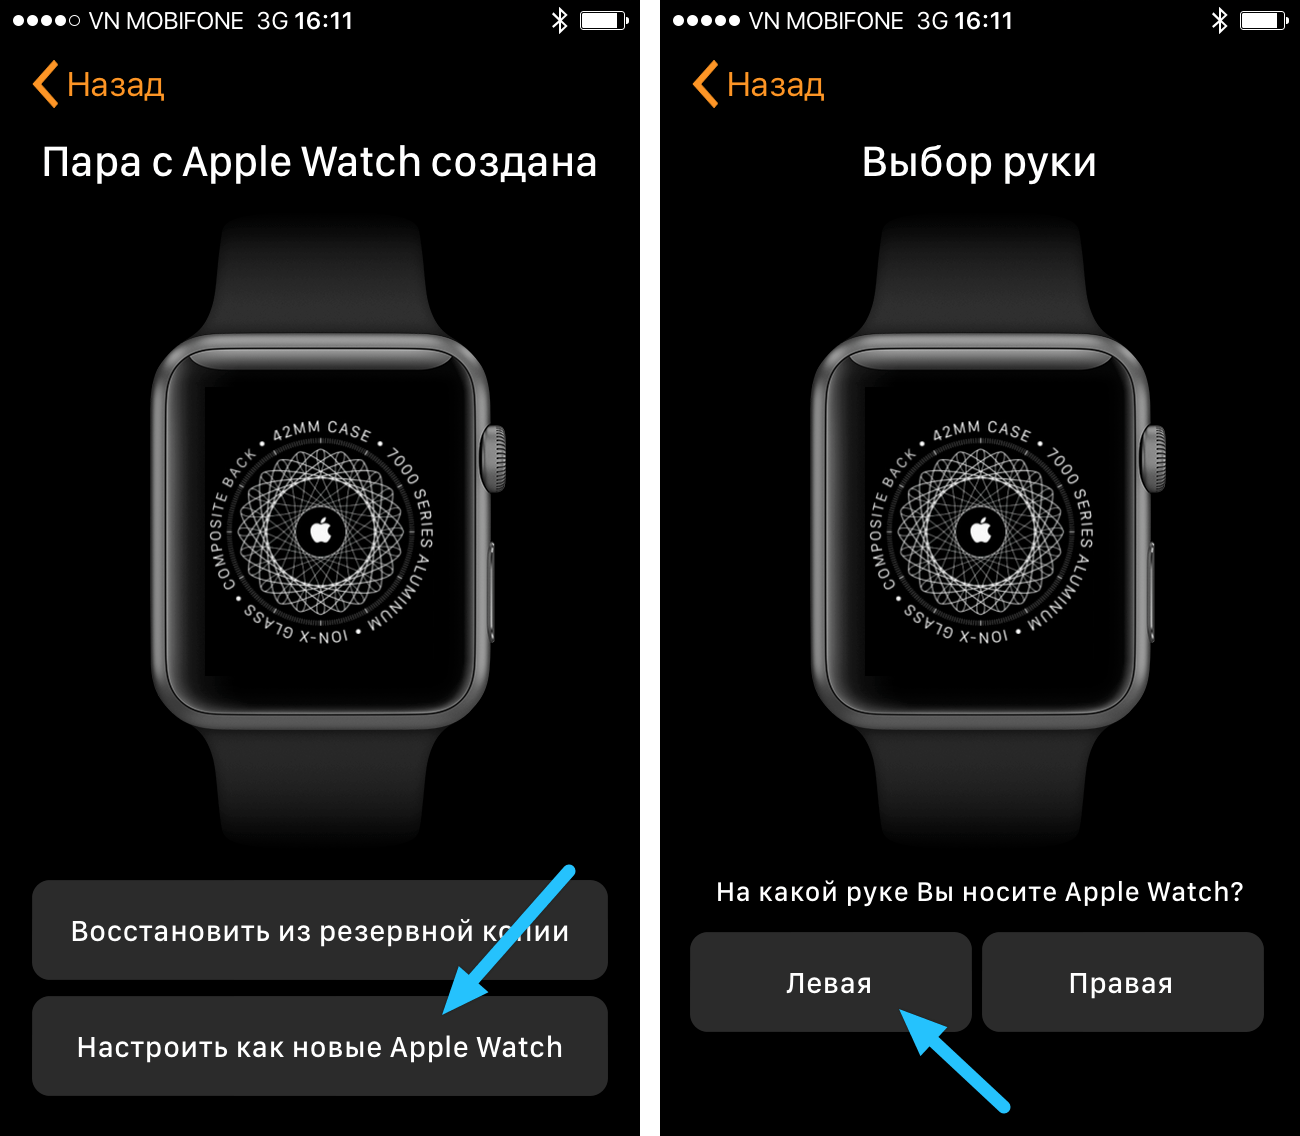 Как определить apple watch. Как настроить часы Эппл вотч. Как настроить часы на айфоне 5. Экран обновления Эппл вотч. Кнопки на АПЛ вотч 8.